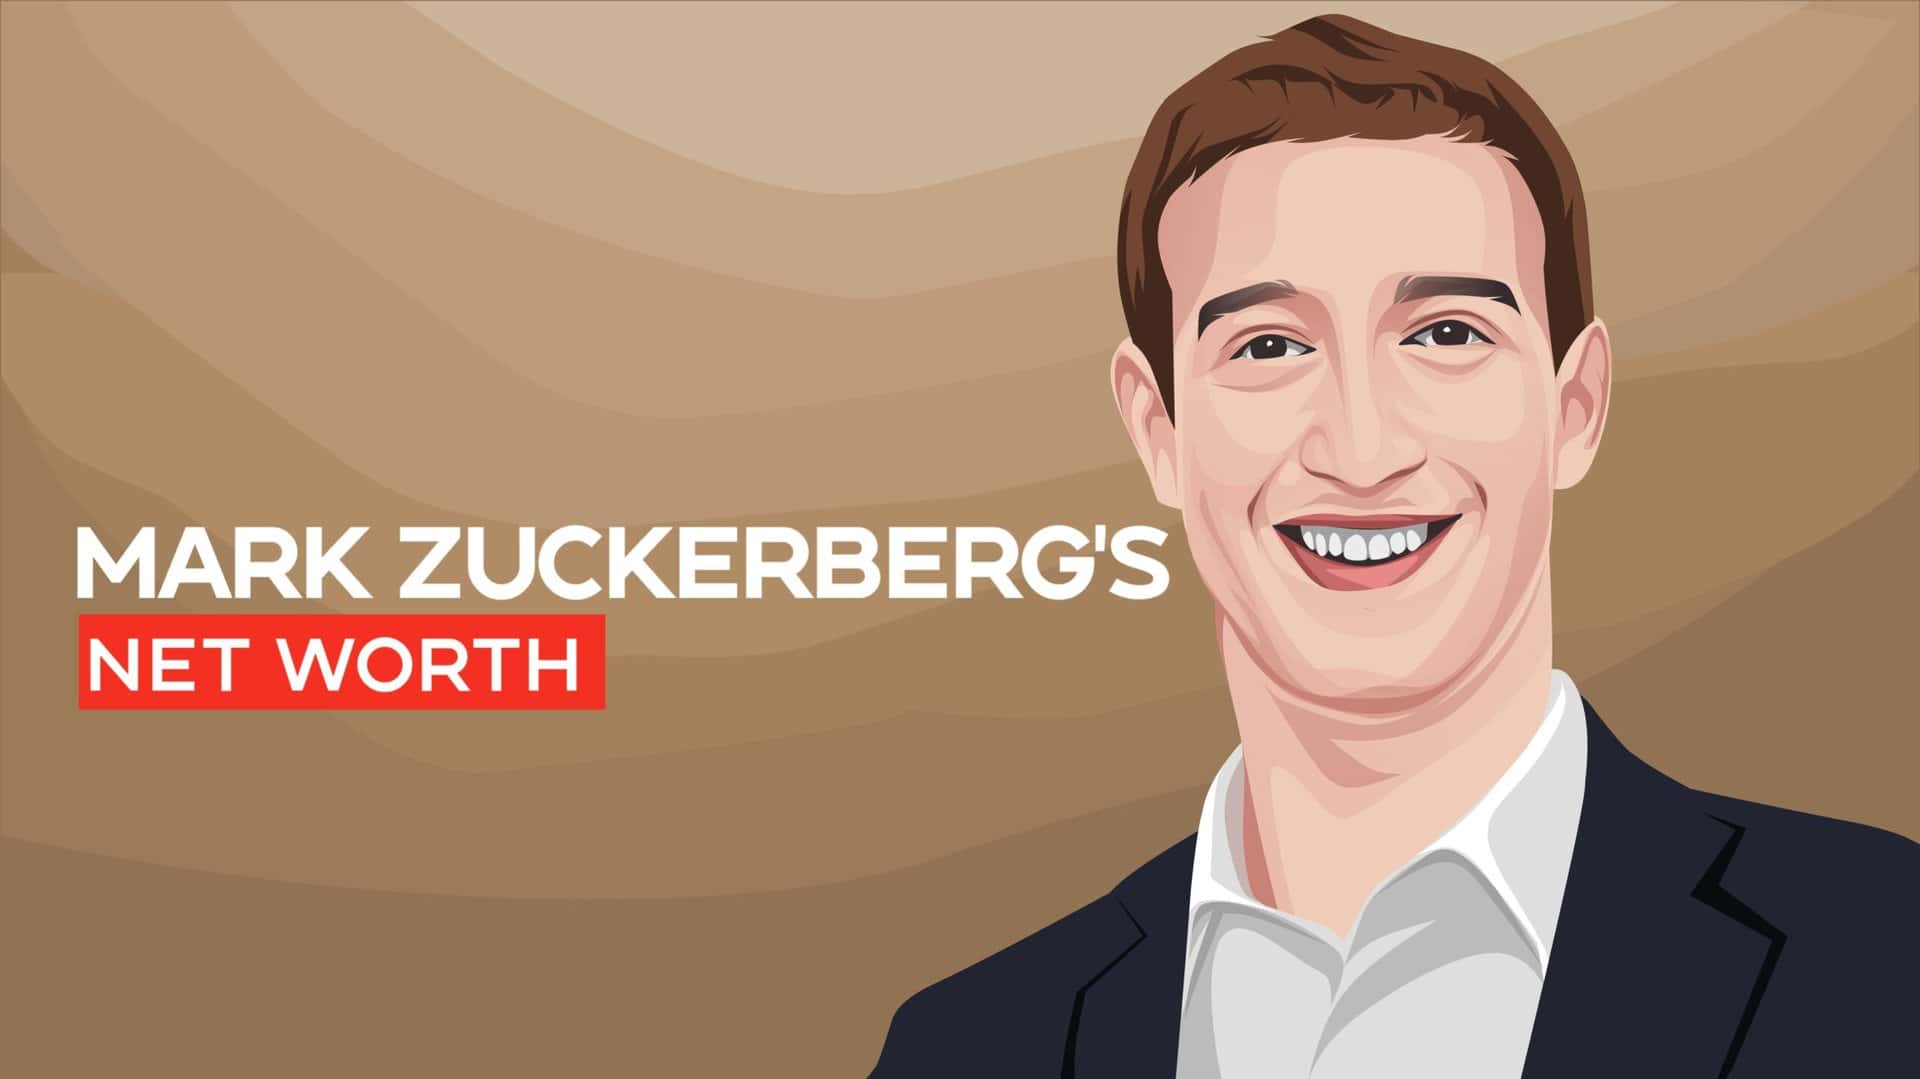 Mark Zuckerberg's net worth